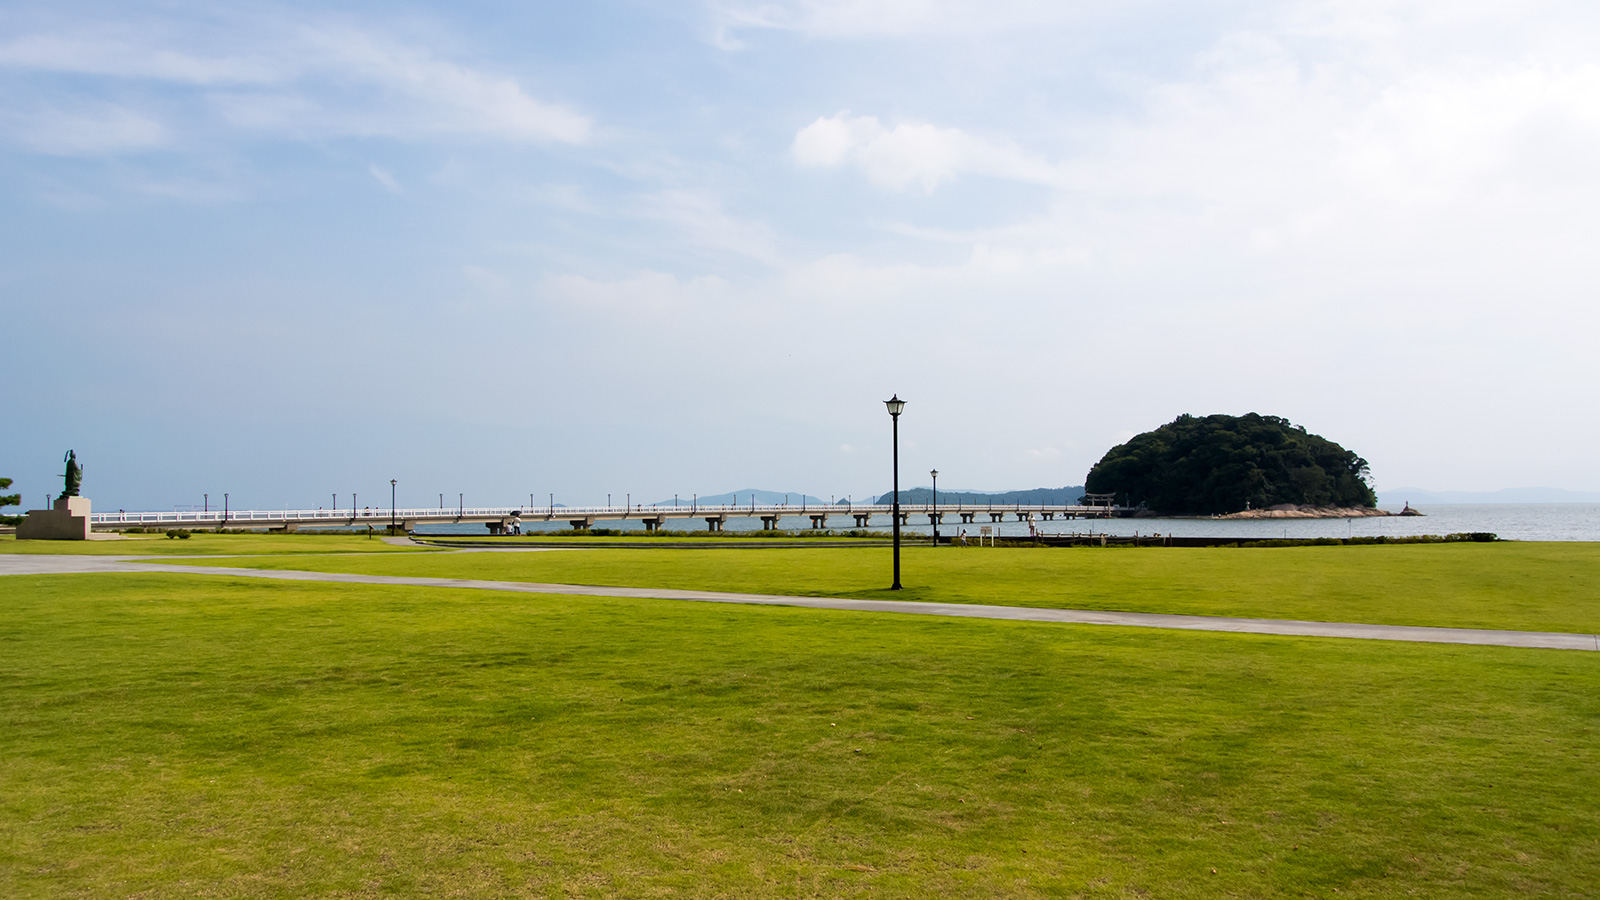 竹島の浮かぶ海の景観を際立たせる緑の芝生 - -愛知県蒲郡市：竹島- -